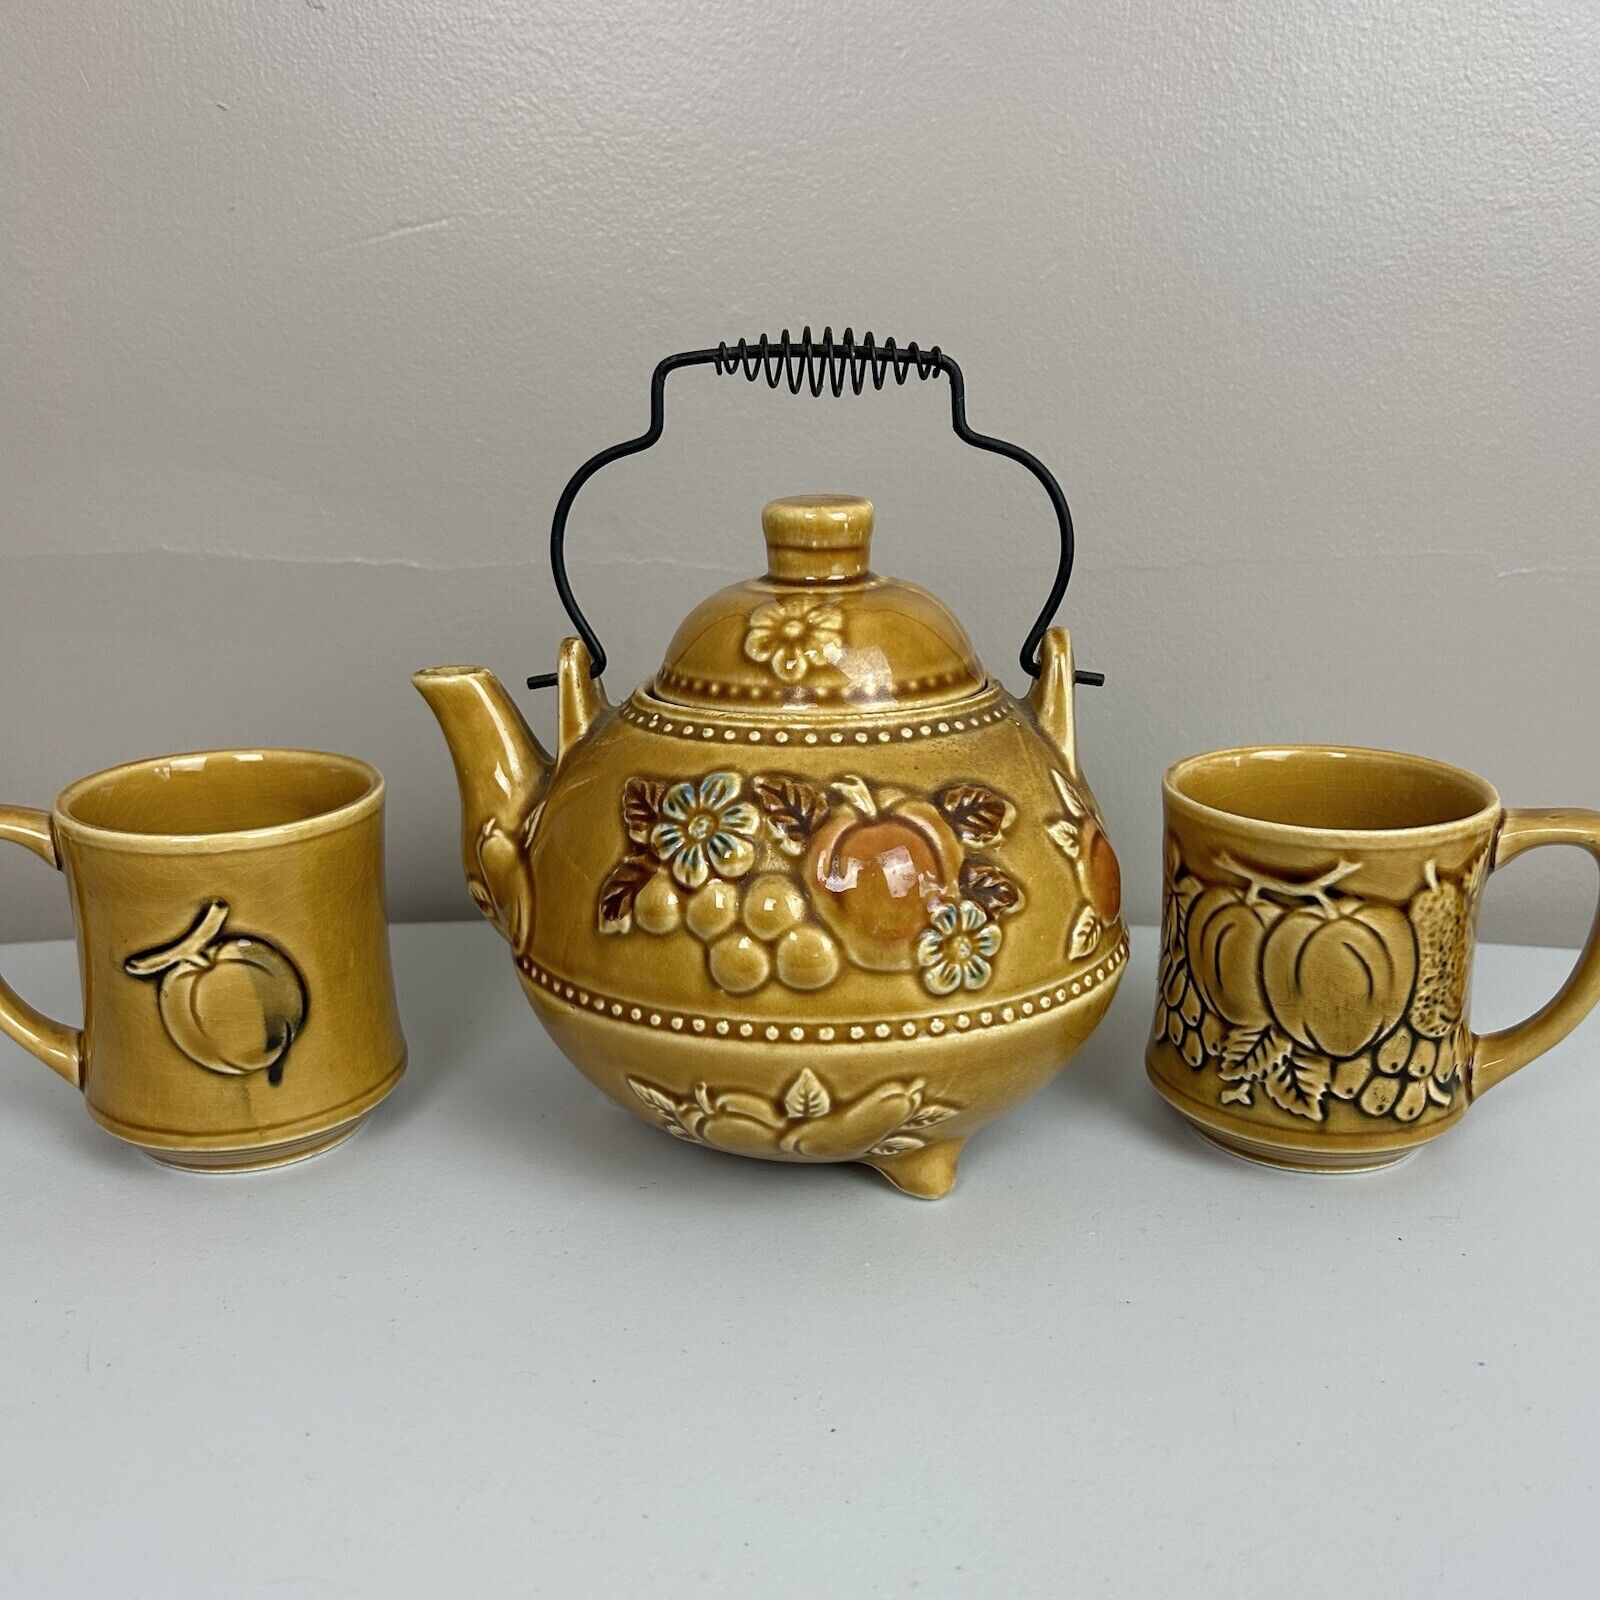 Vtg 70's Japan Harvest Gold Glazed Ceramic Tea/Coffee Pot Crackled Glaze